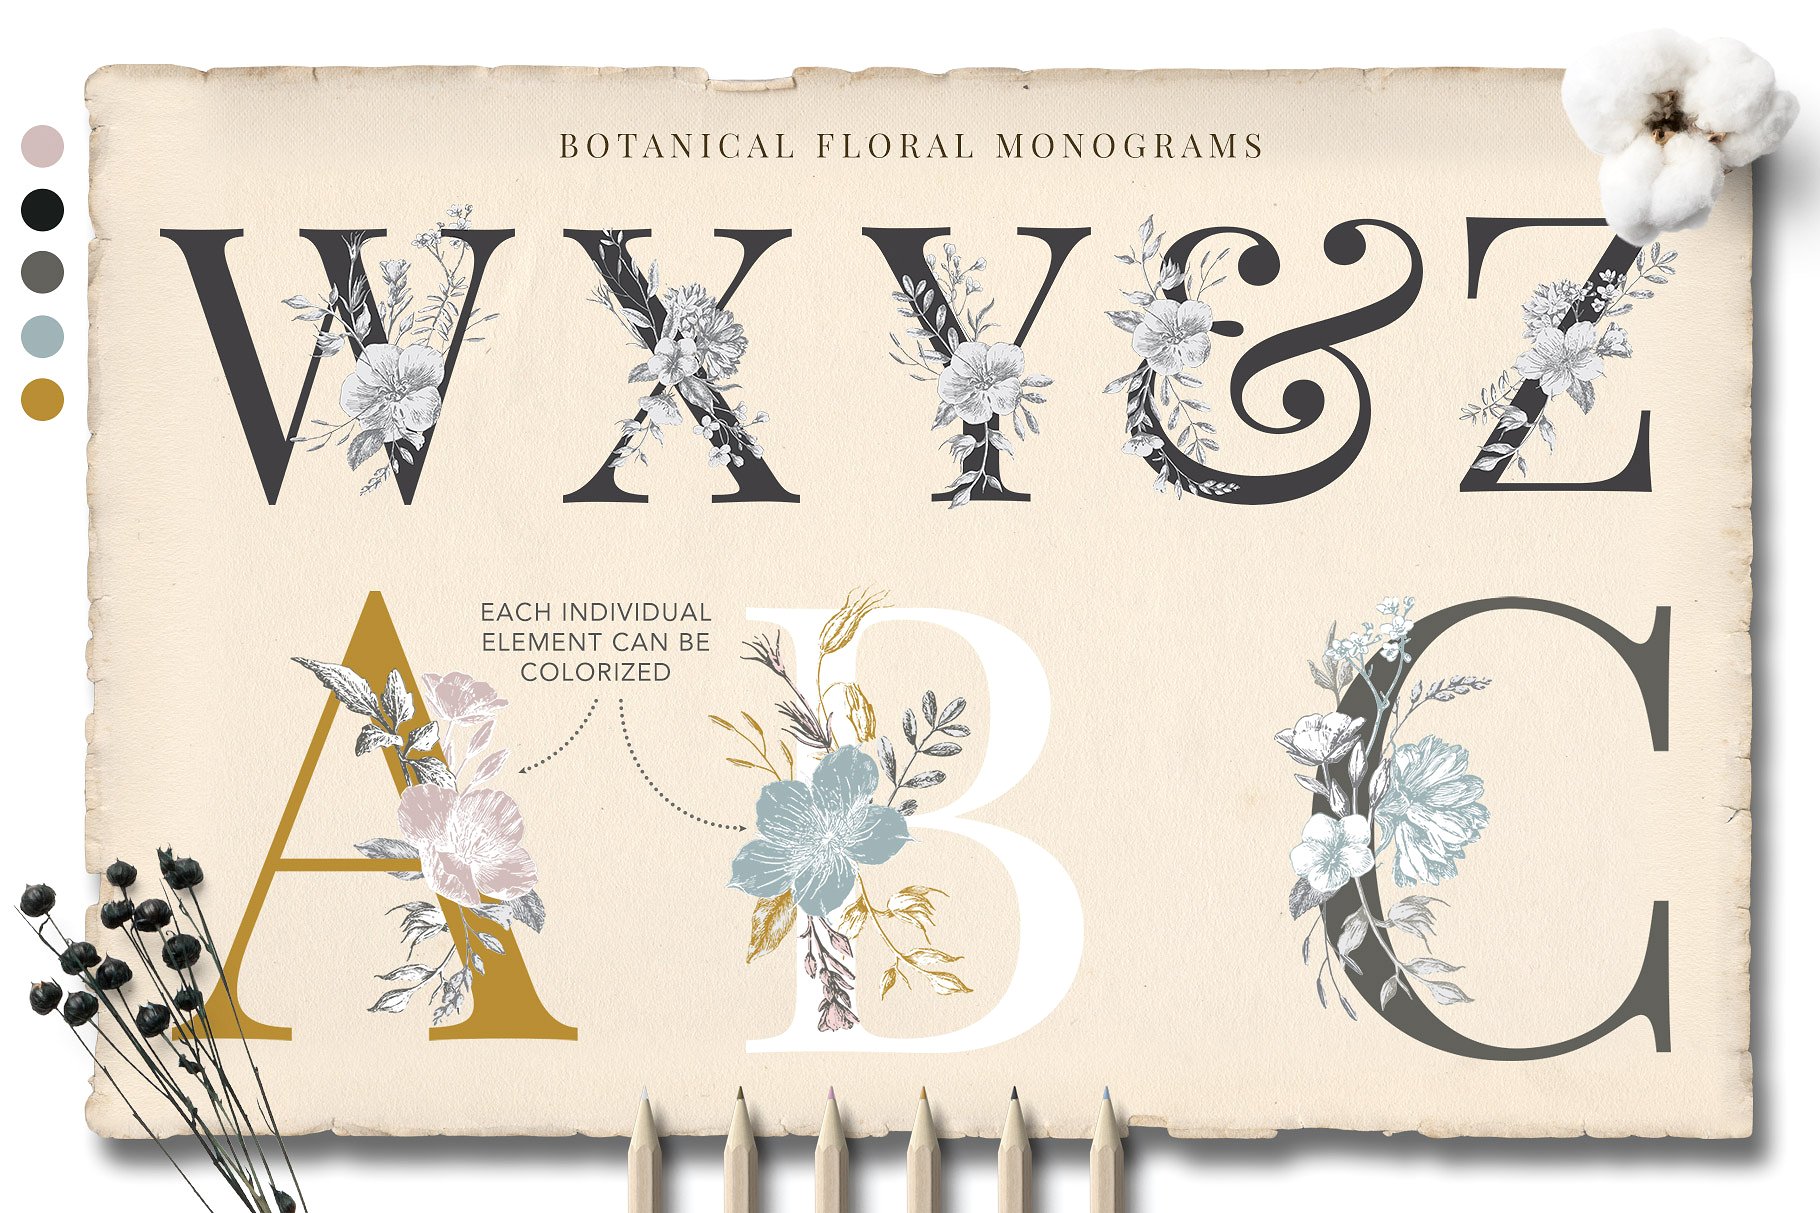 矢量复古手绘花卉字母设计素材 Botanical-Curio